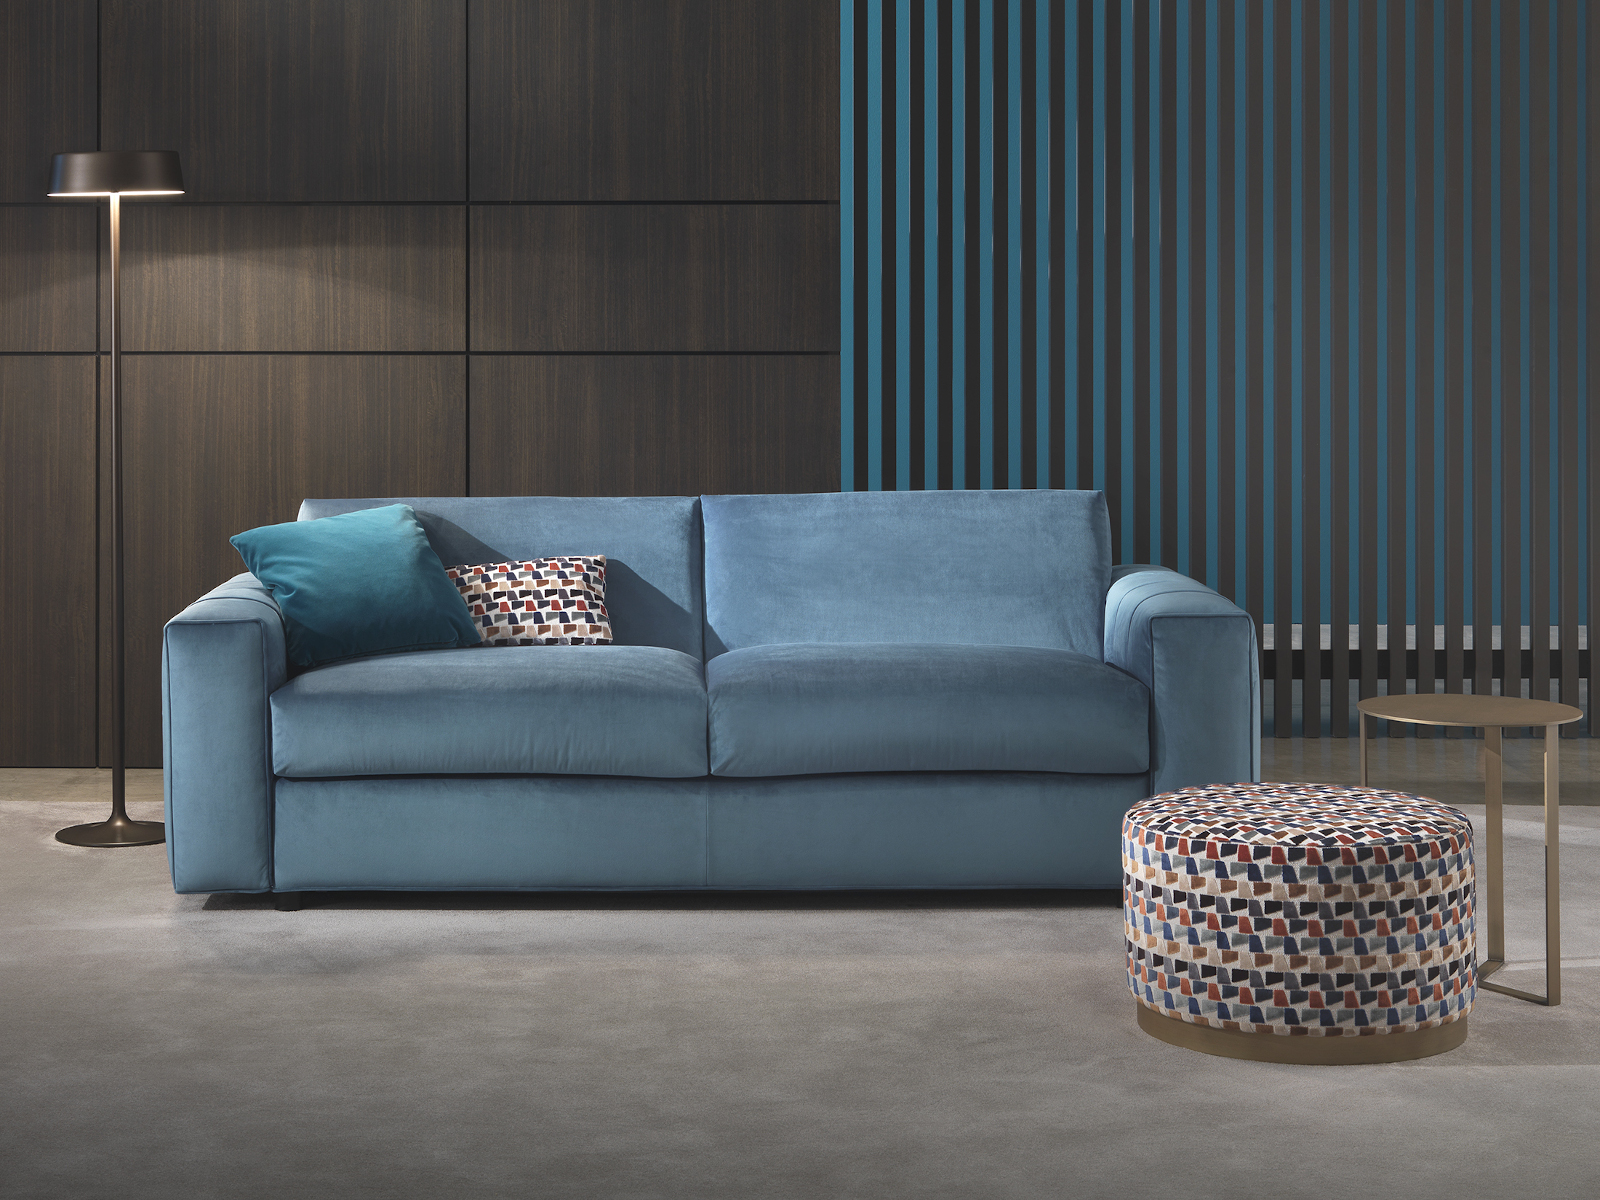 Sofabed modern luxury velvet light blue Kendall